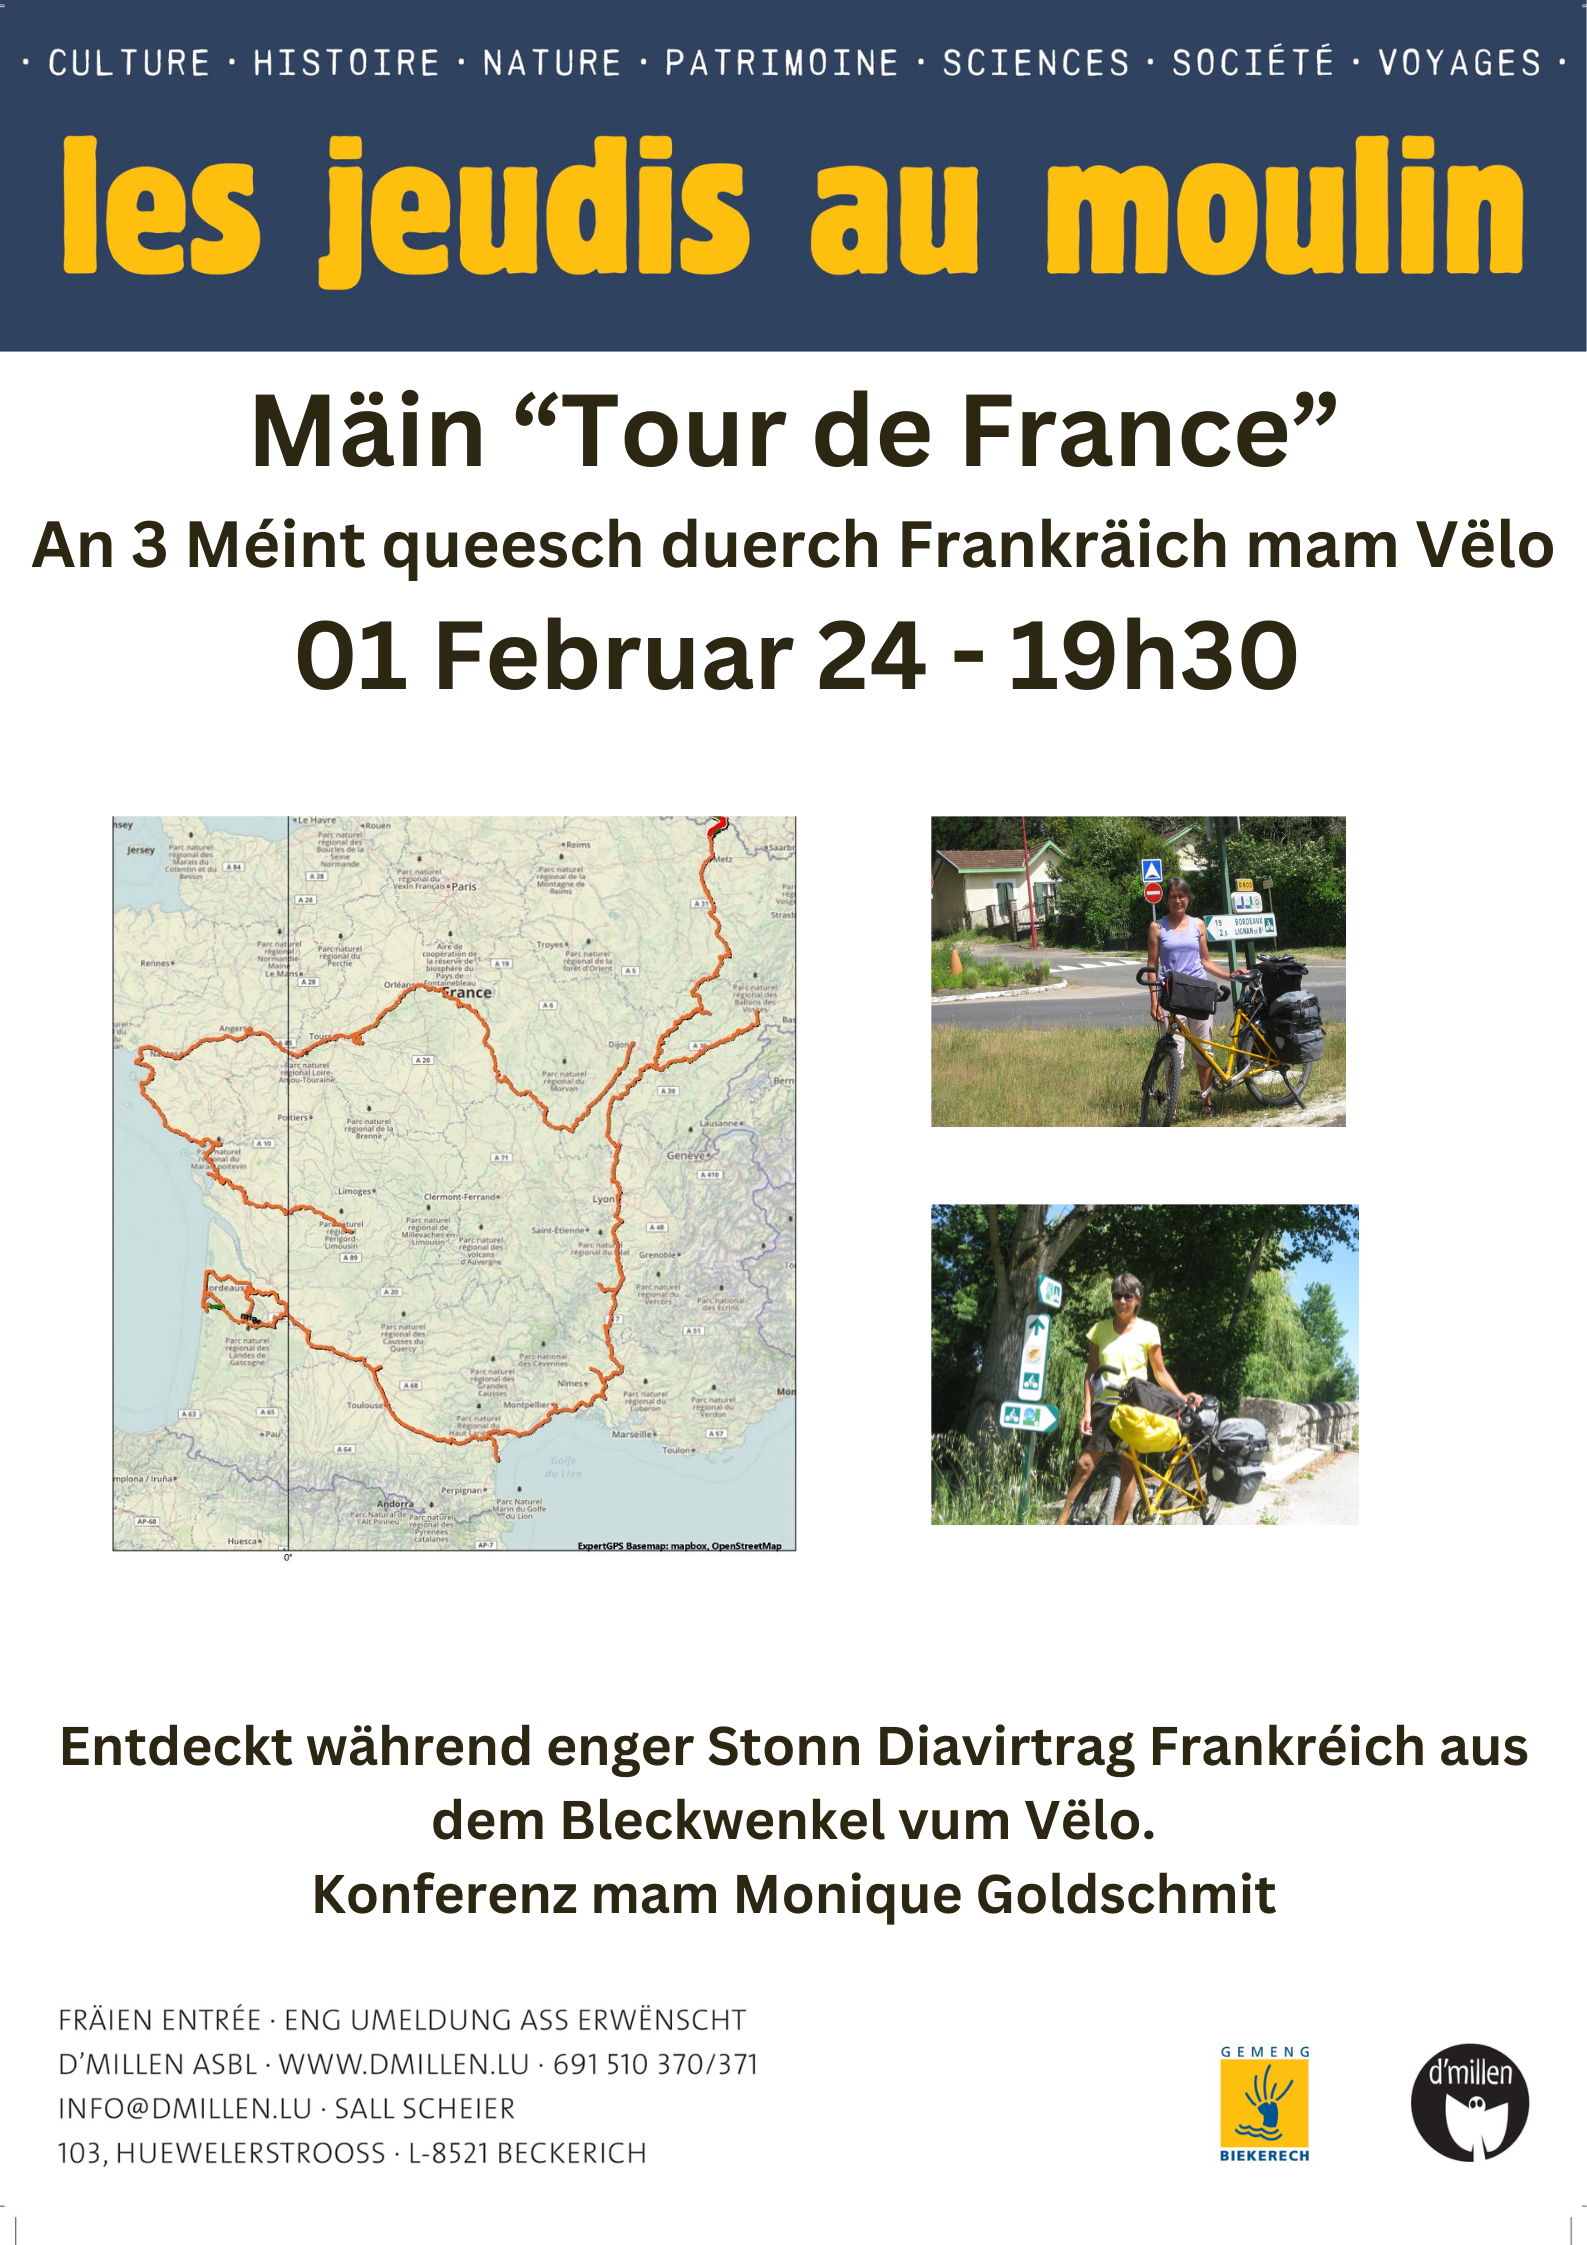 Conférence: "Mäin Tour de France"